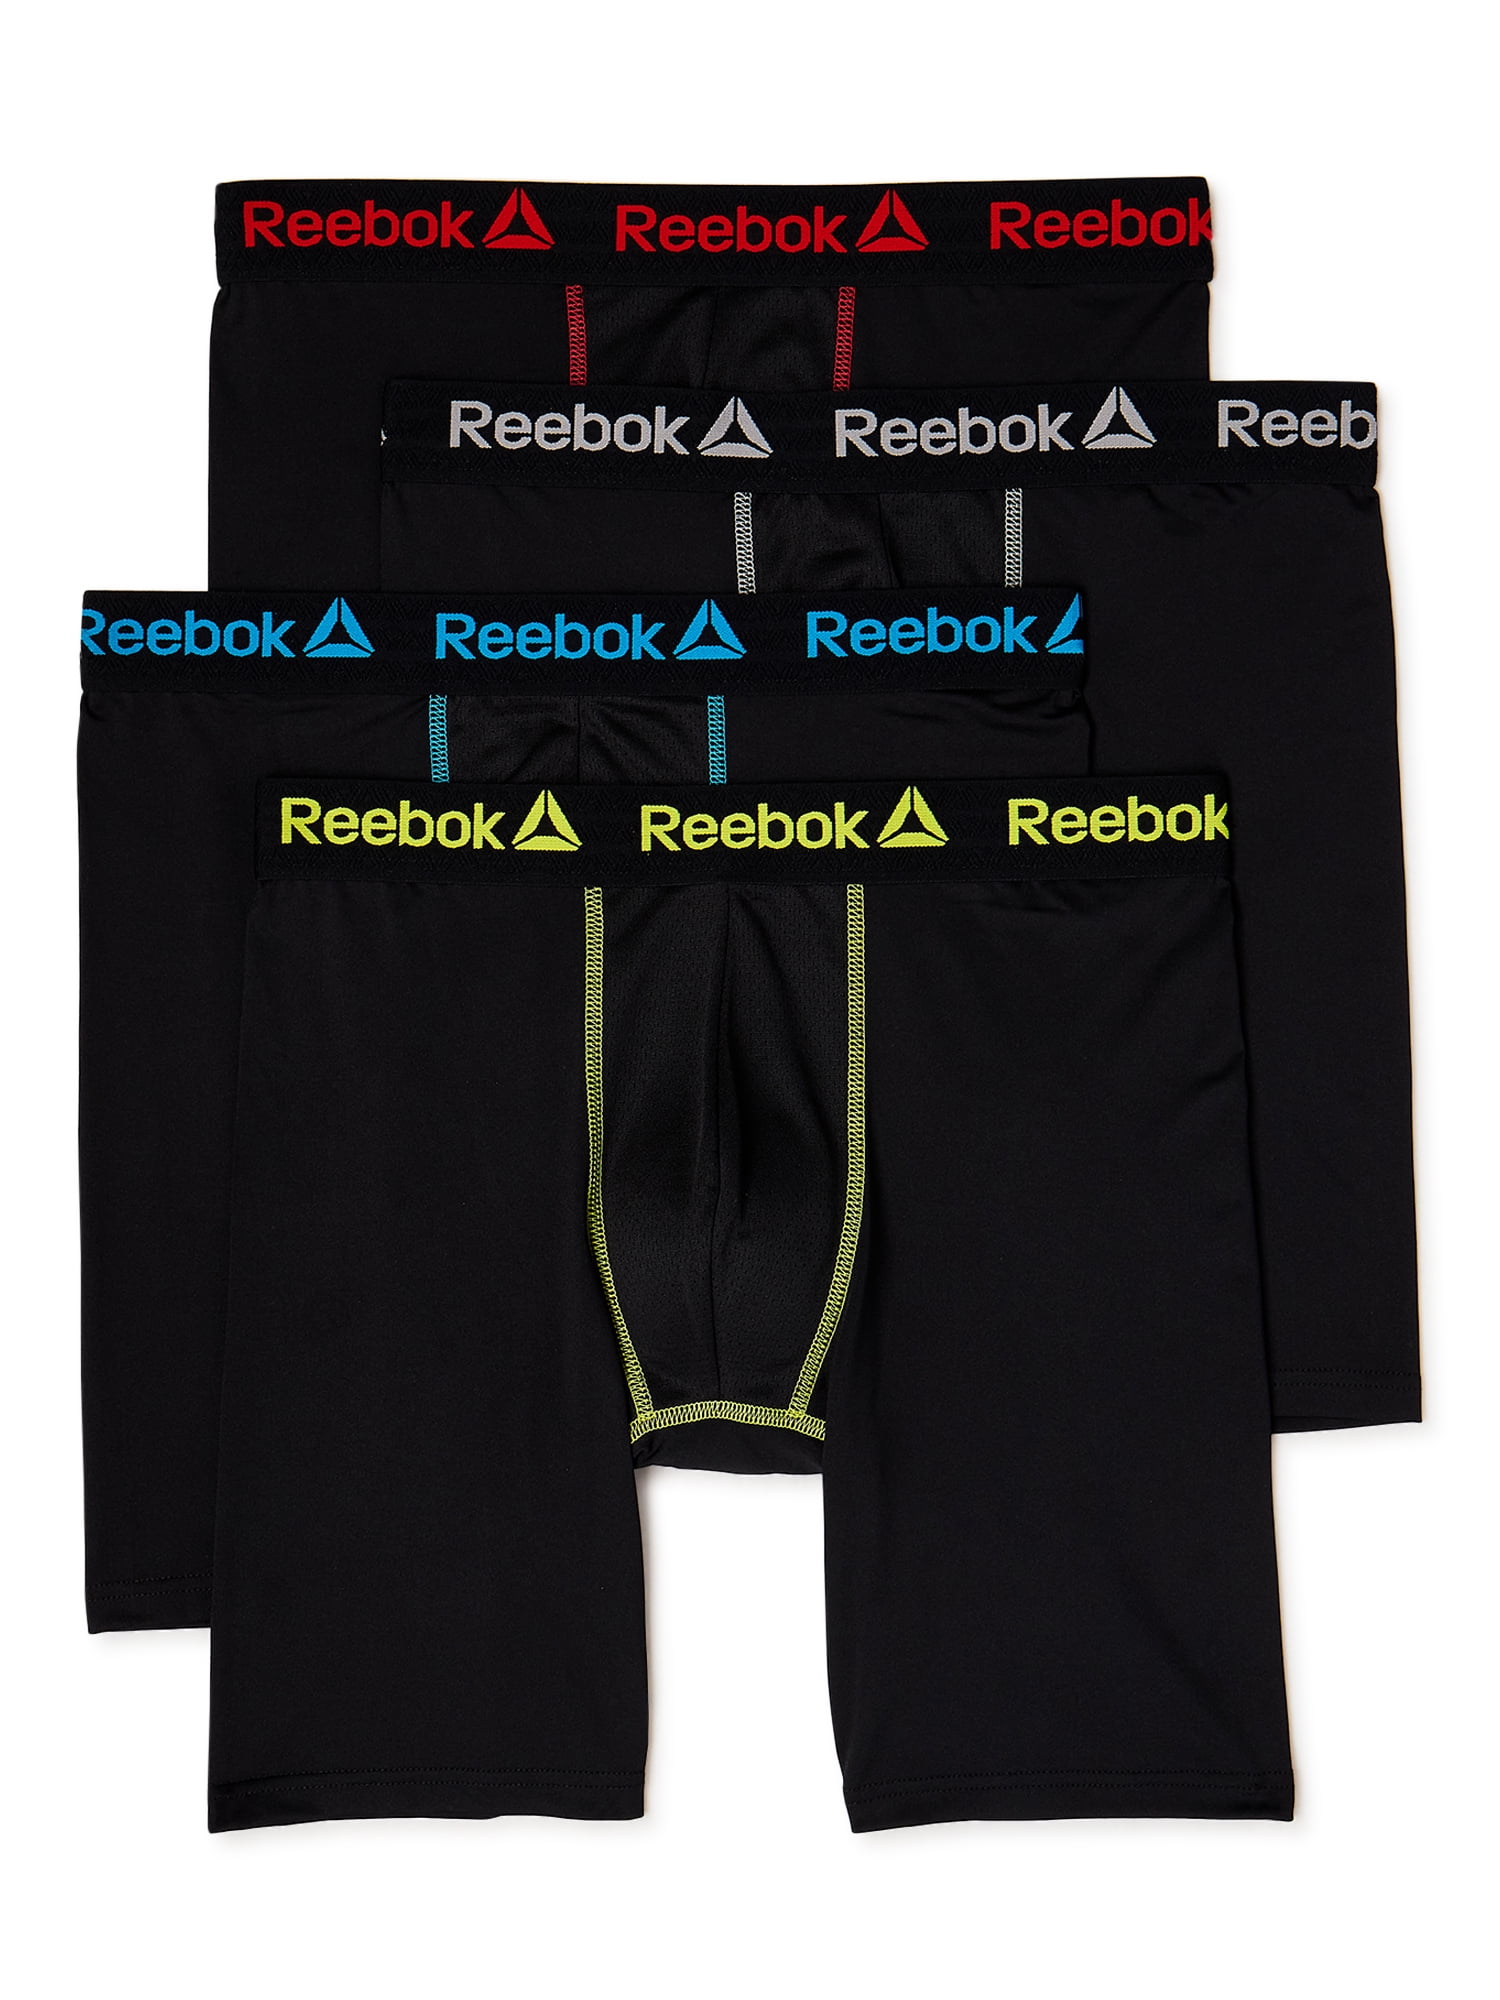 Reebok Men's Active Underwear Sport Soft Performance Boxer Briefs 4 Pack